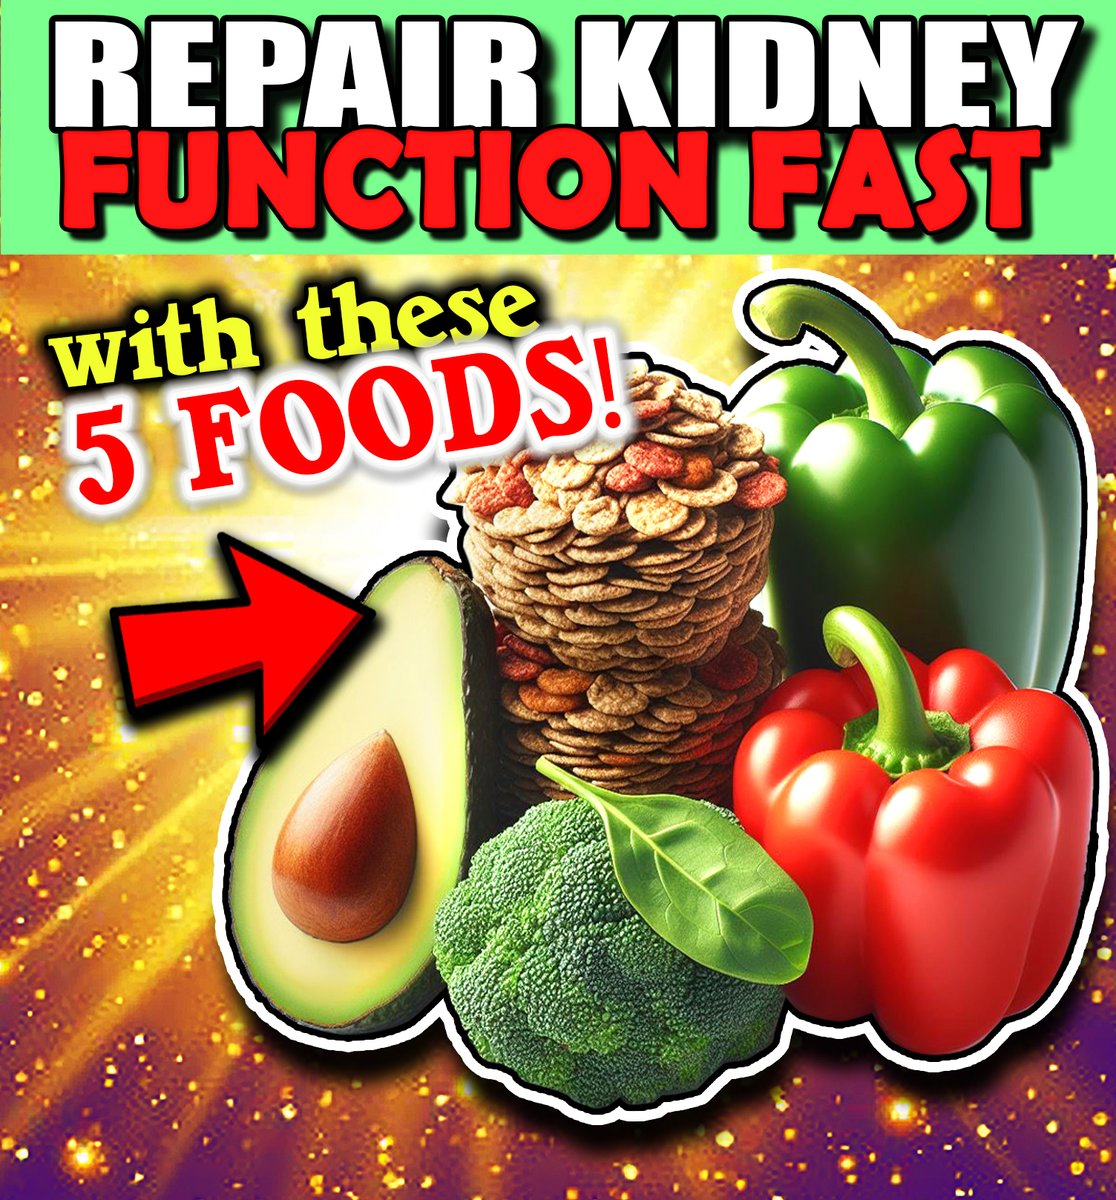 🔴 Eat To Improve Kidney Health: youtu.be/c2u9jaRQ84M This Is The #1 Best Fiber Source

________________
#kidneydisease #kidneyfailure #dialysis #chronickidneydisease #diabetes #highbloodpressure #creatinine #kidneyrepair #kidneyhealth #00kidney